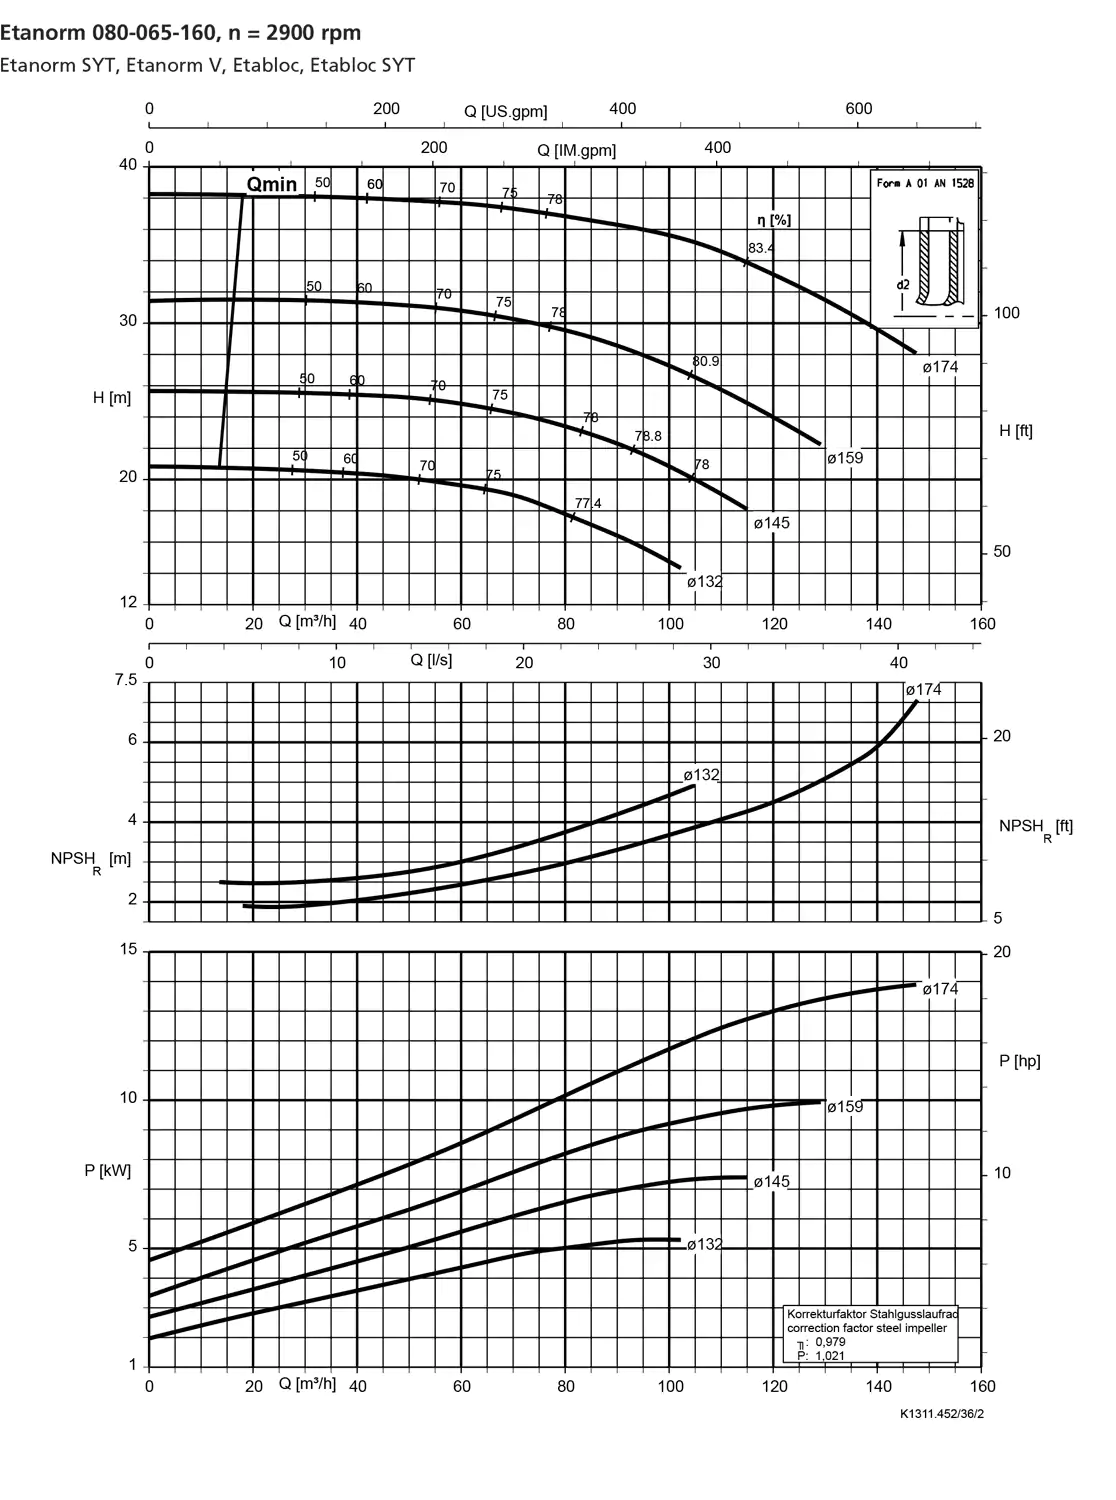 نمودار-کارکرد-پمپ-etanorm-syt-80-065-160-2900